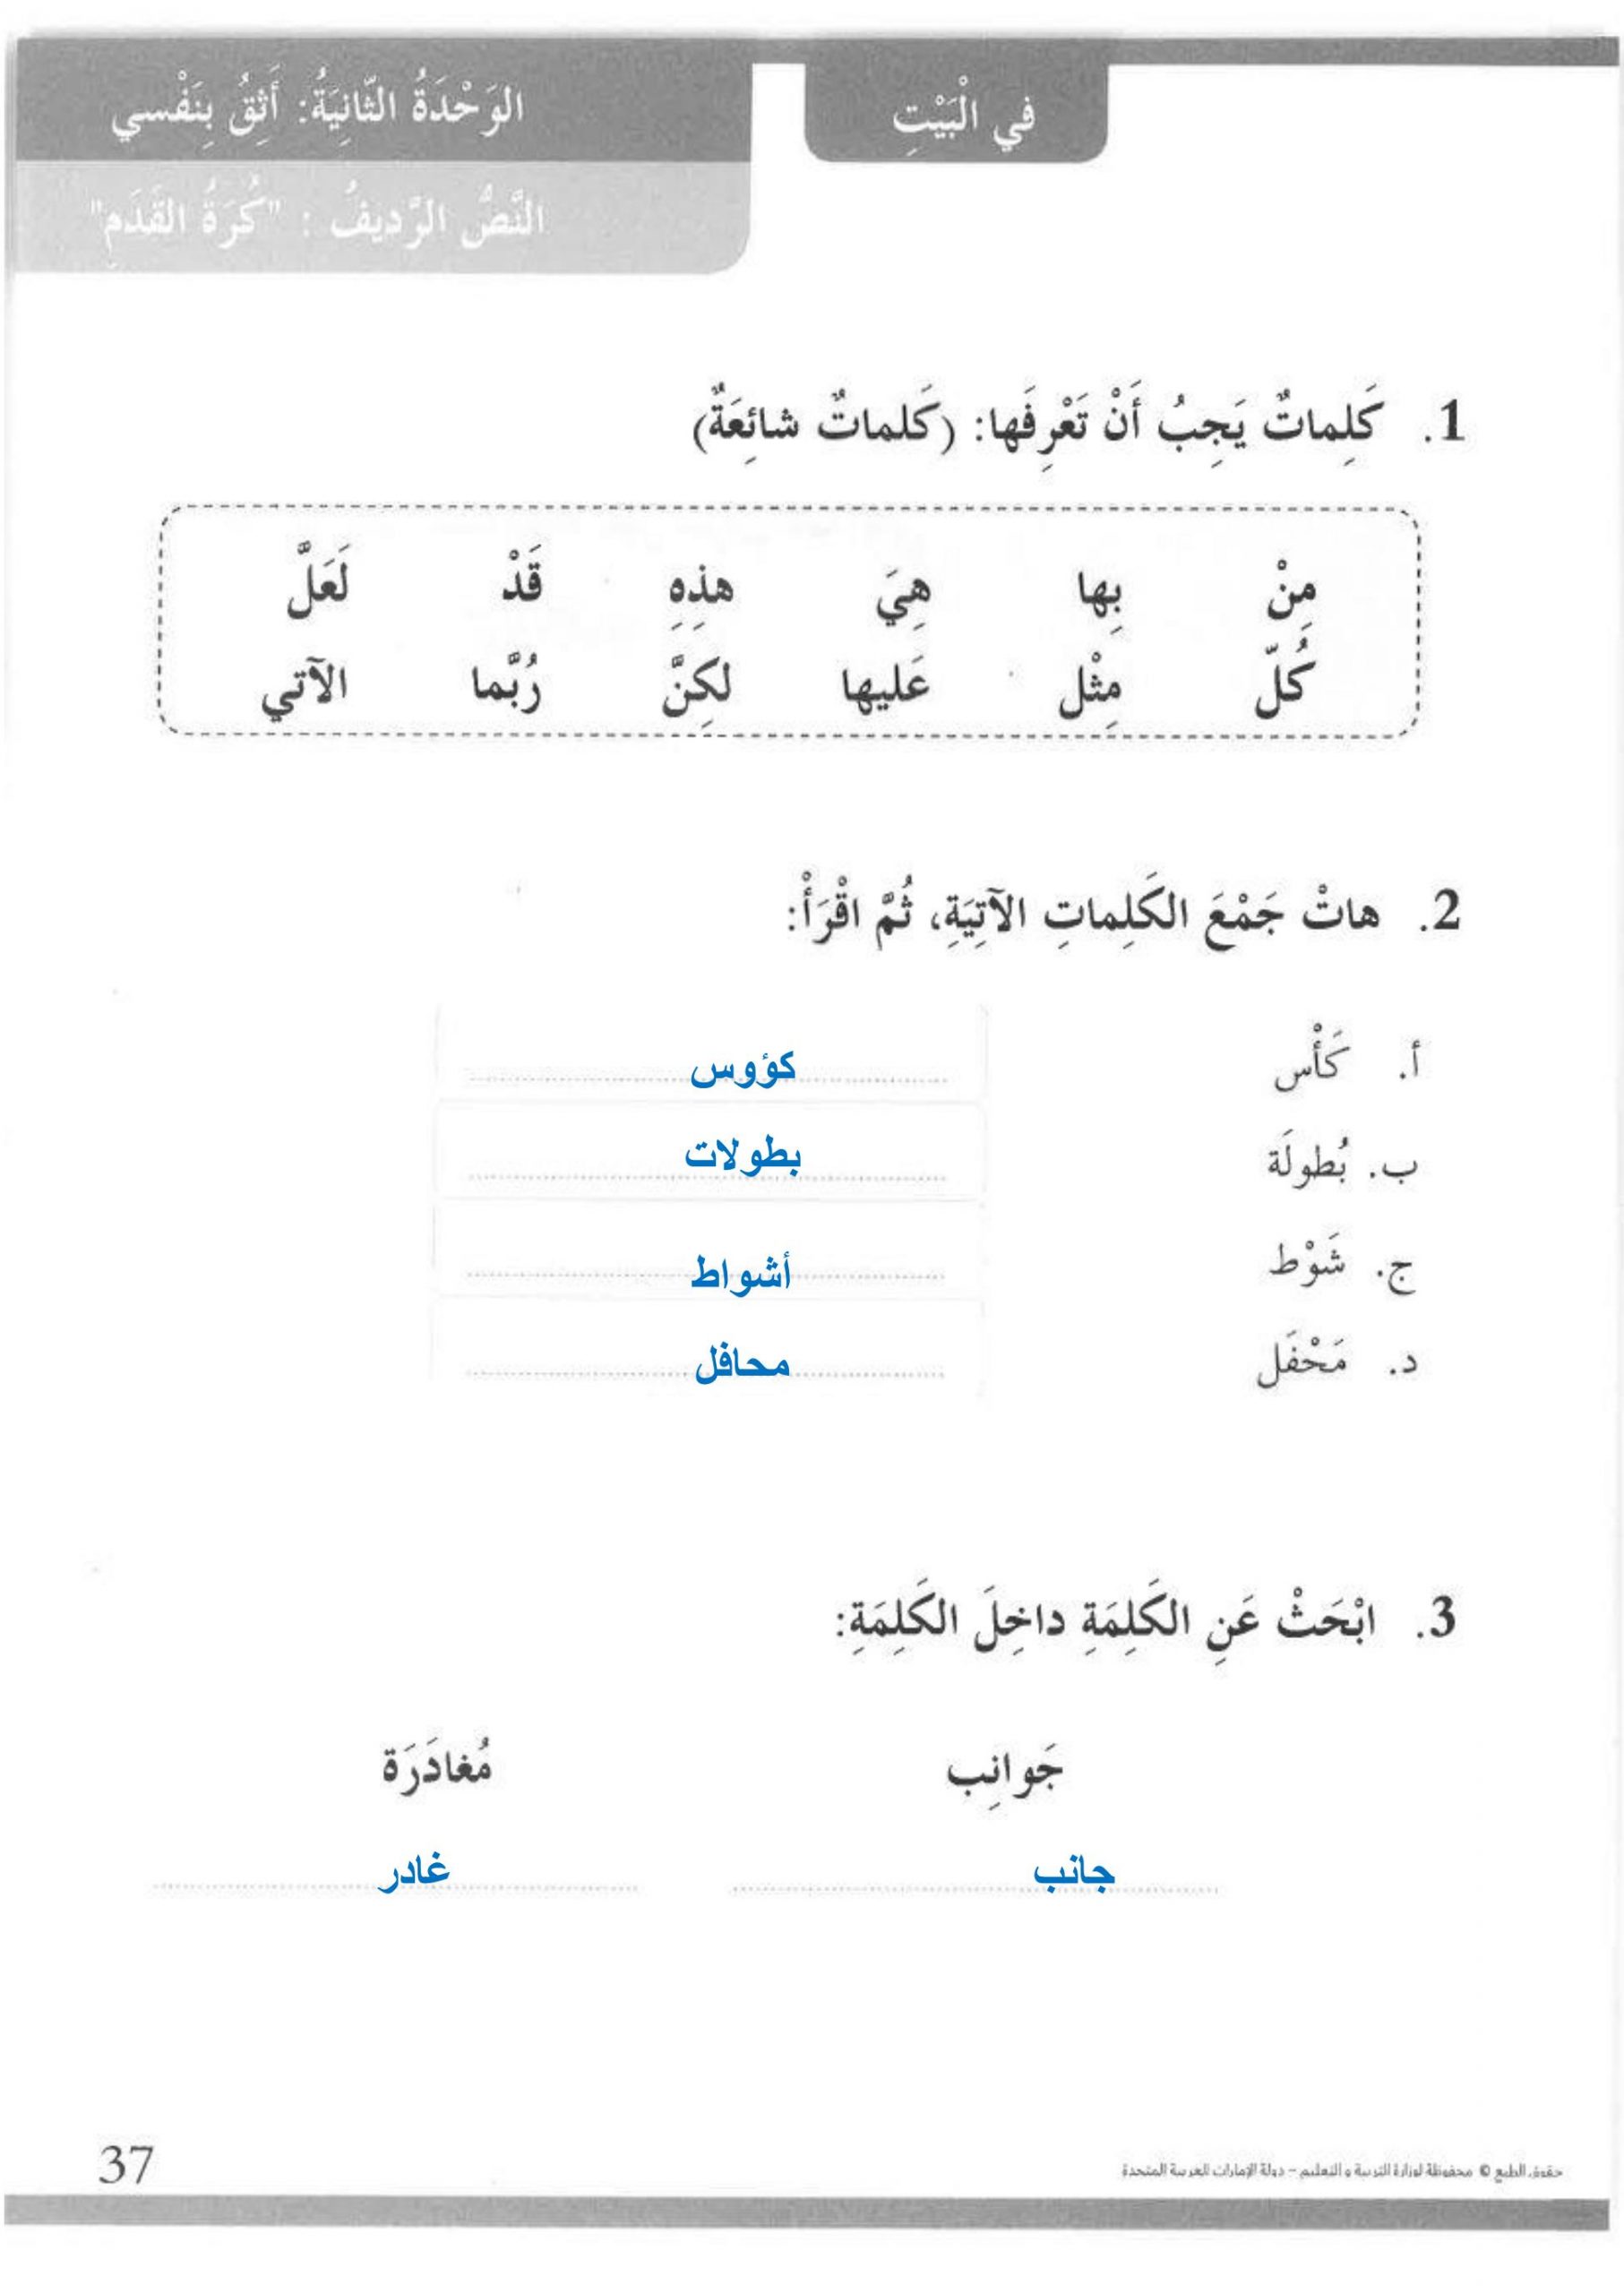 درس النص الرديف كرة القدم مع الاجابات للصف الثالث مادة اللغة العربية